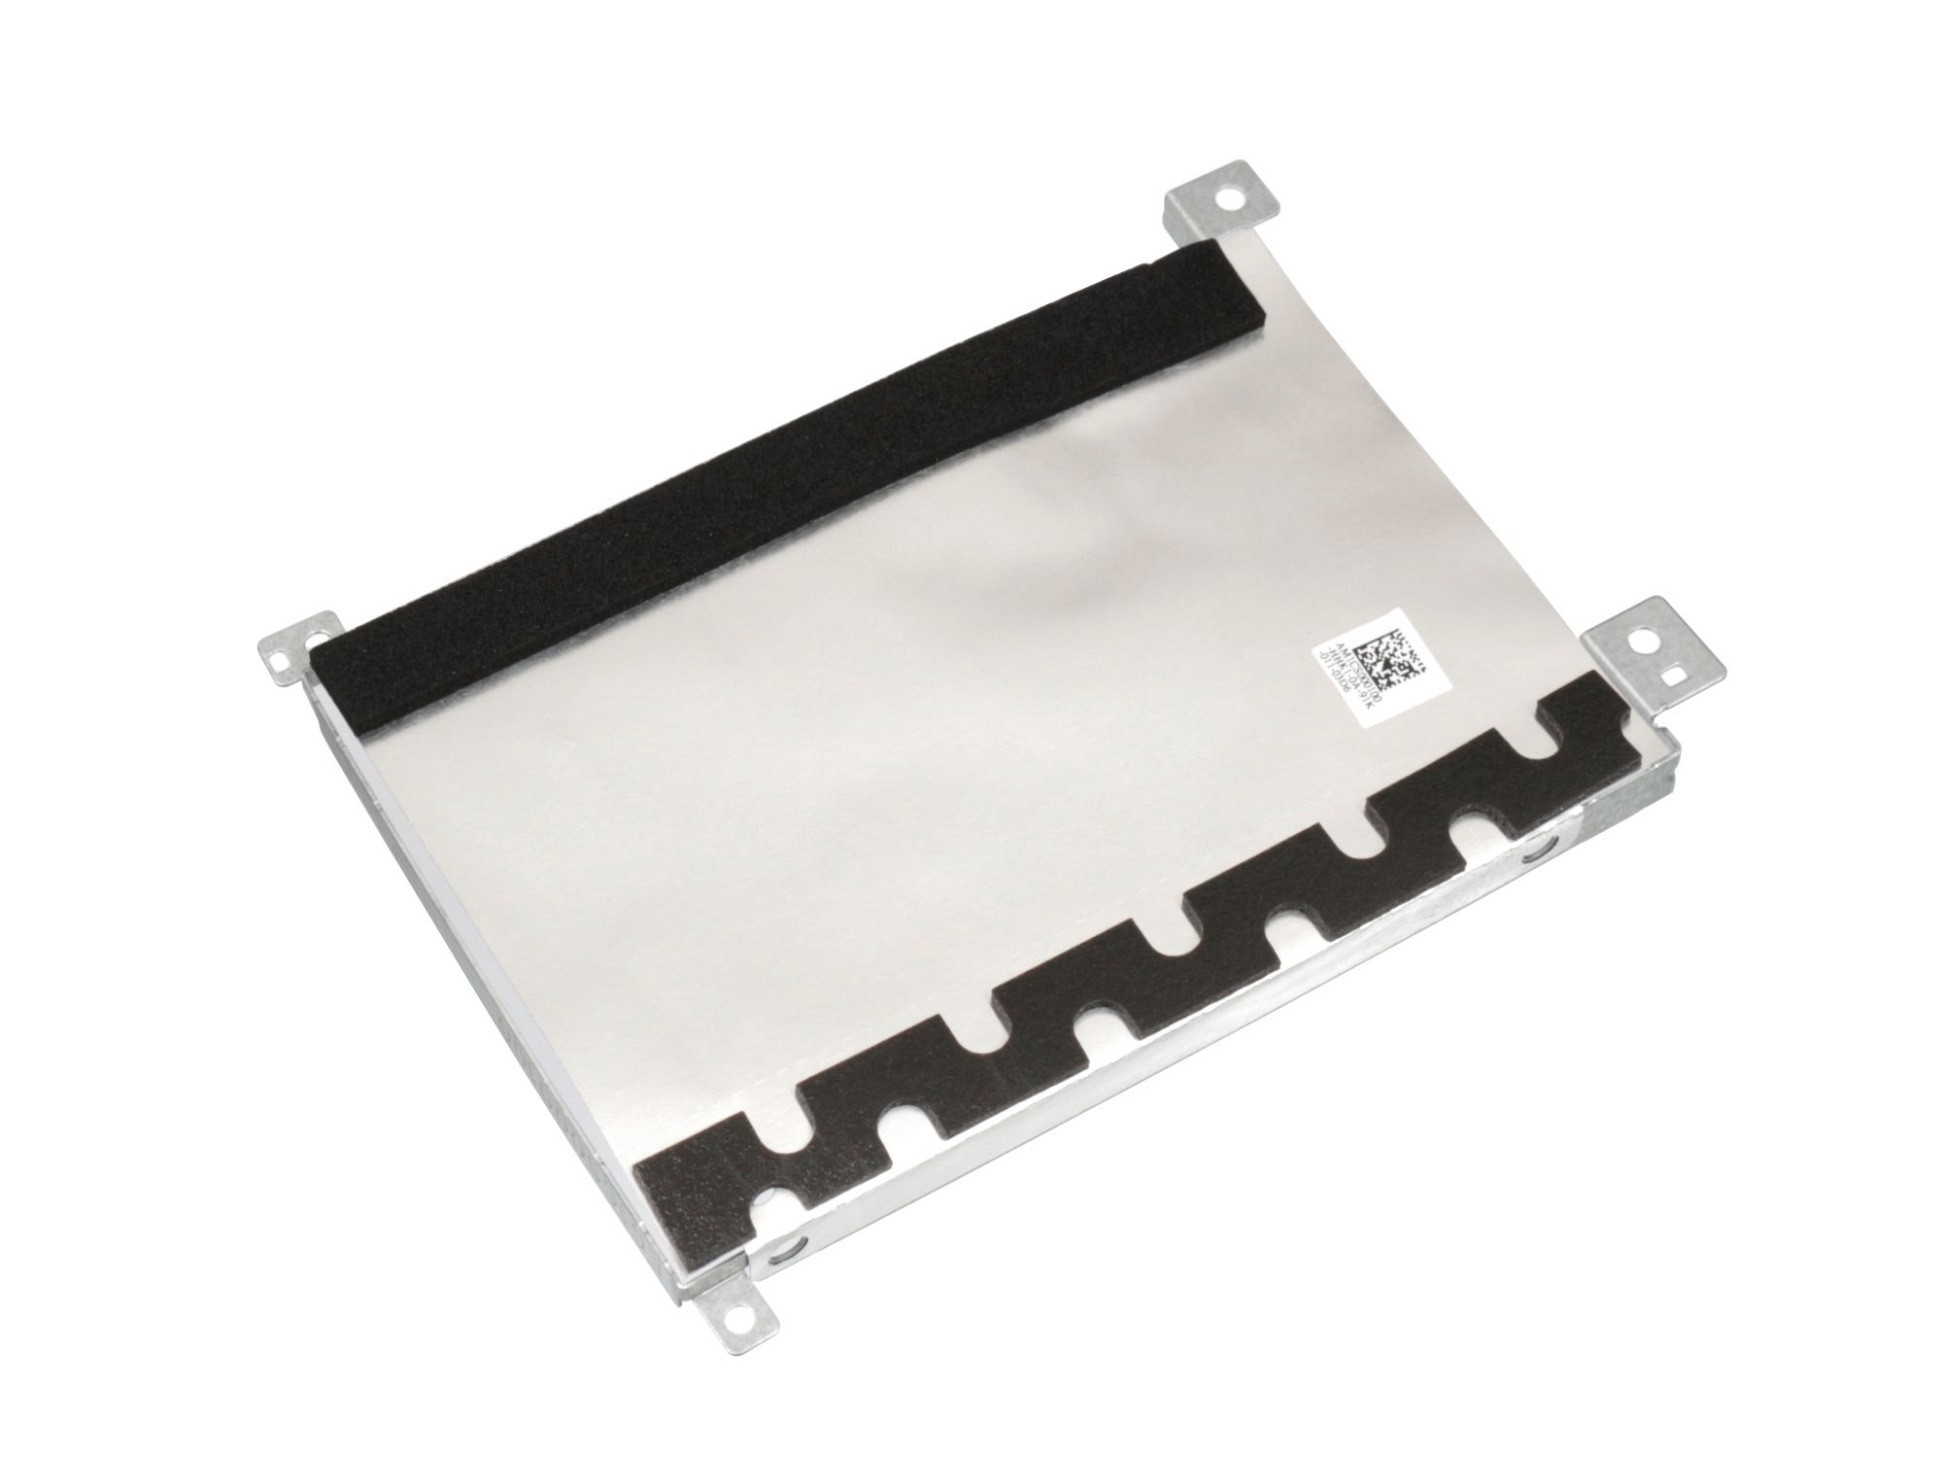 Festplatten-Einbaurahmen für den 1. Festplatten Schacht Original für Lenovo IdeaPad S145-14AST (81ST)